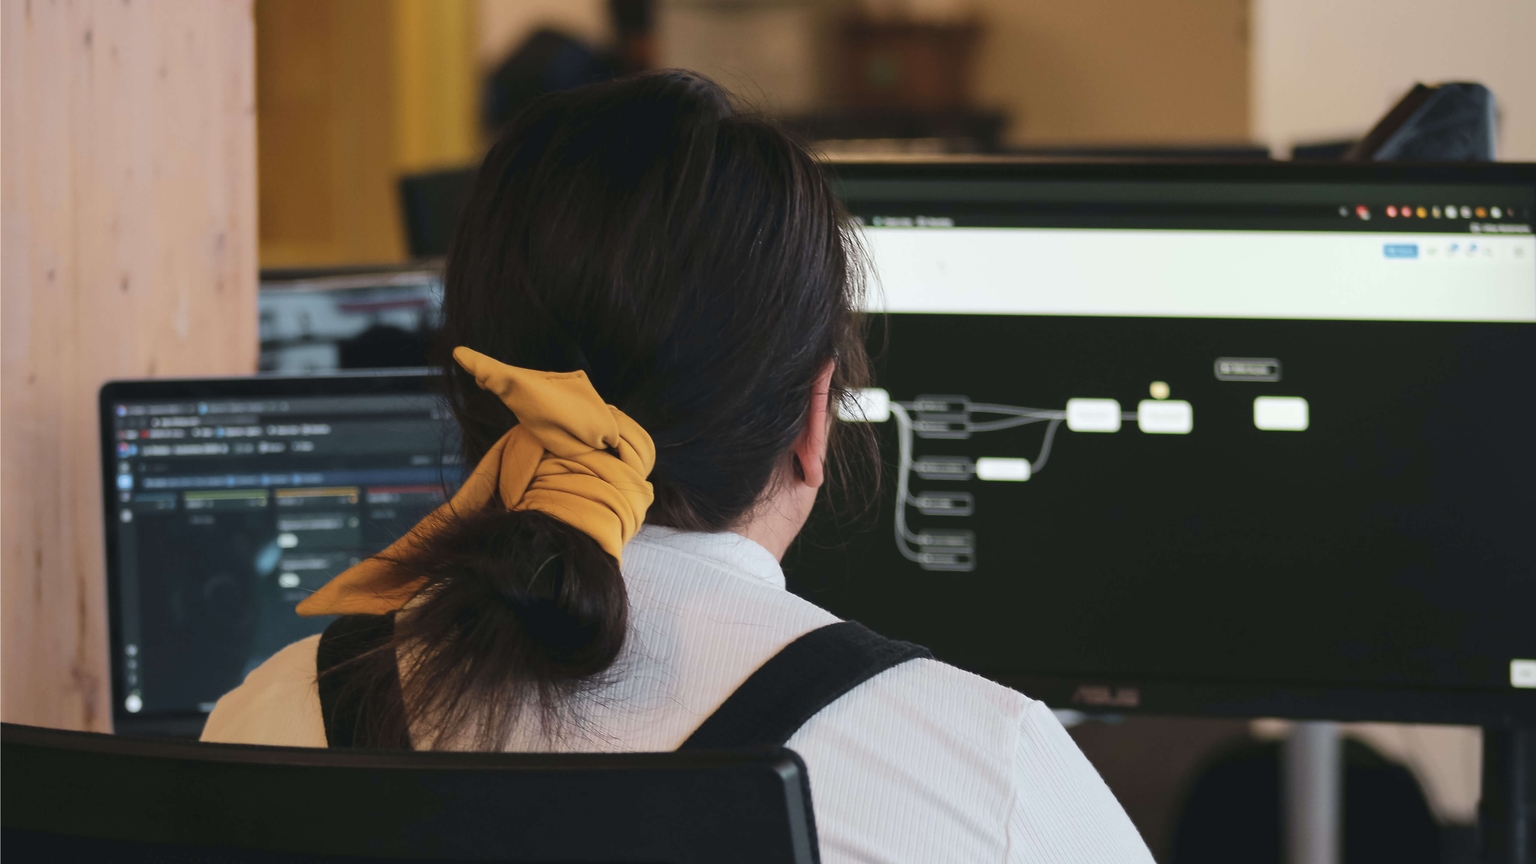 vrouw met een geel strikje rond haar paardenstaart maakt prototypes op haar computer